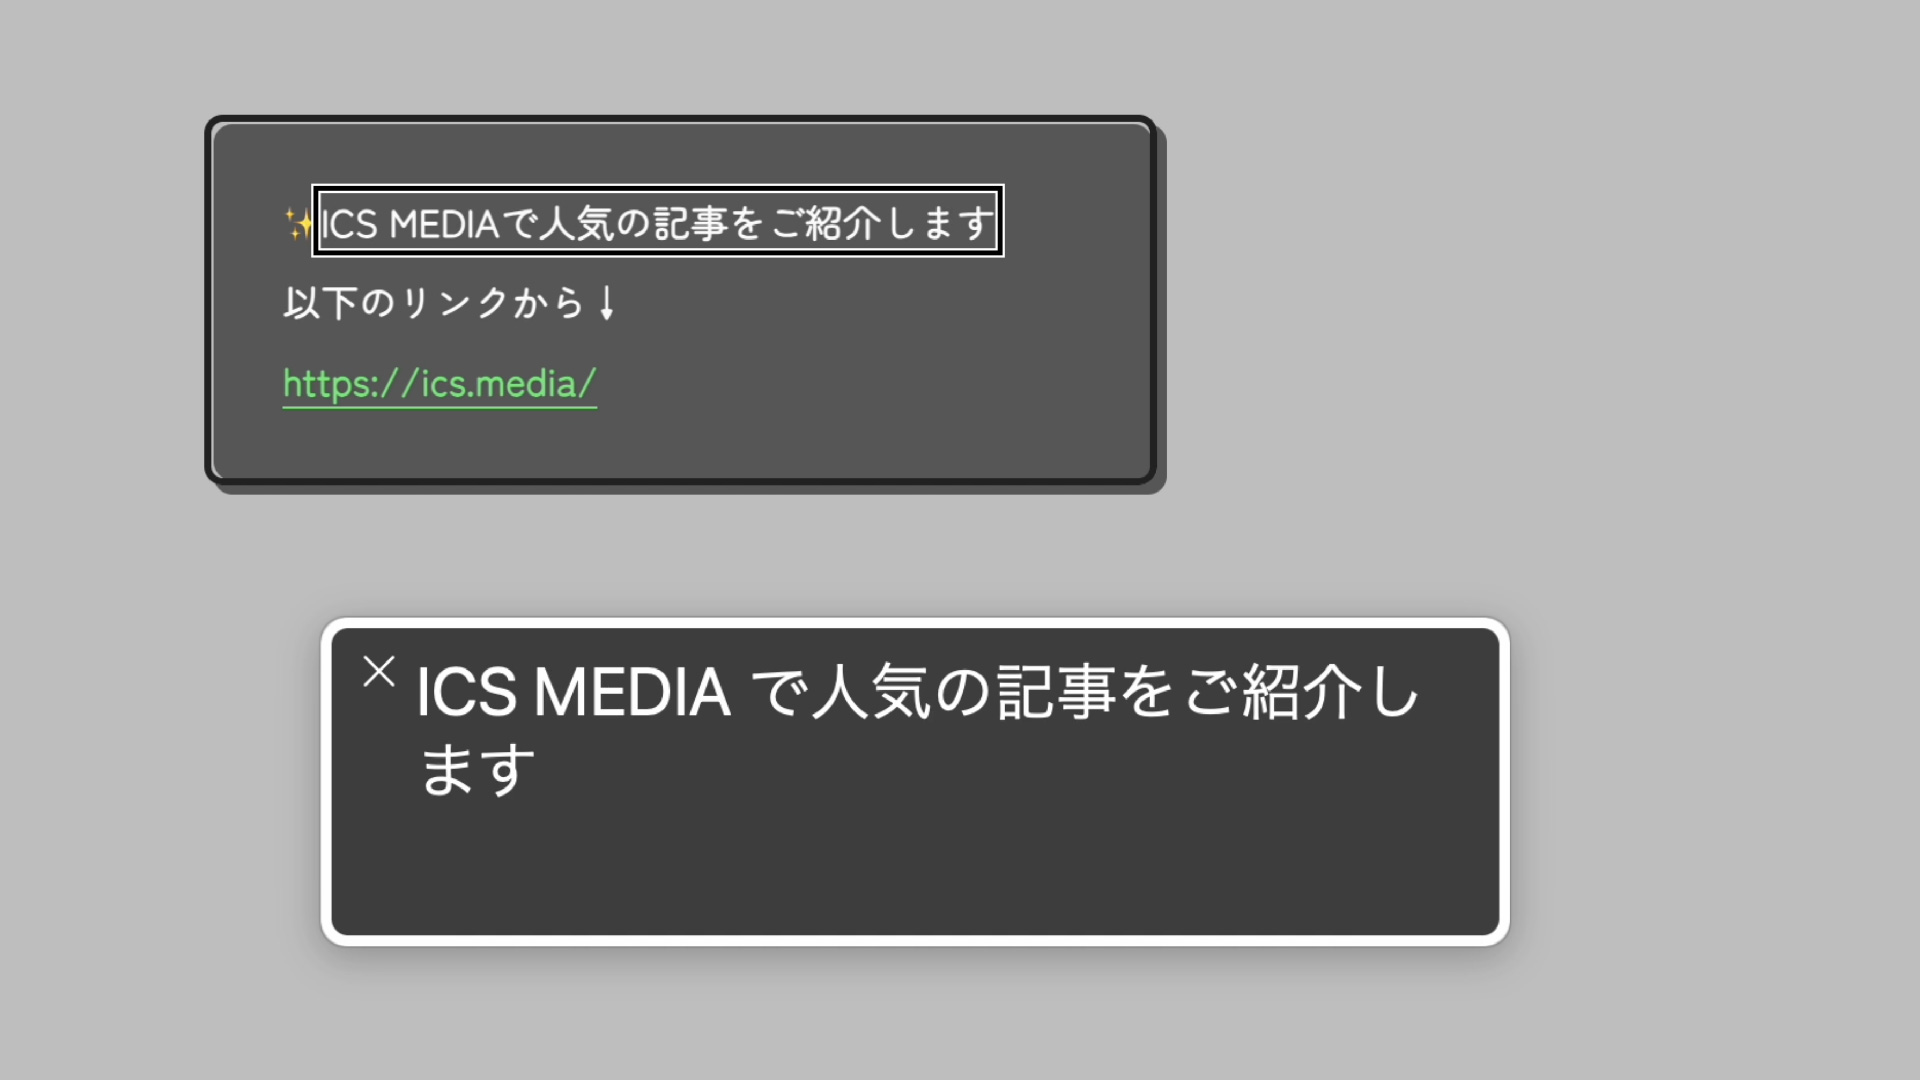 ウィンドウ上の黒いパネルに、「ICS MEDIAで人気の記事をご紹介します」という文章が表示されている。